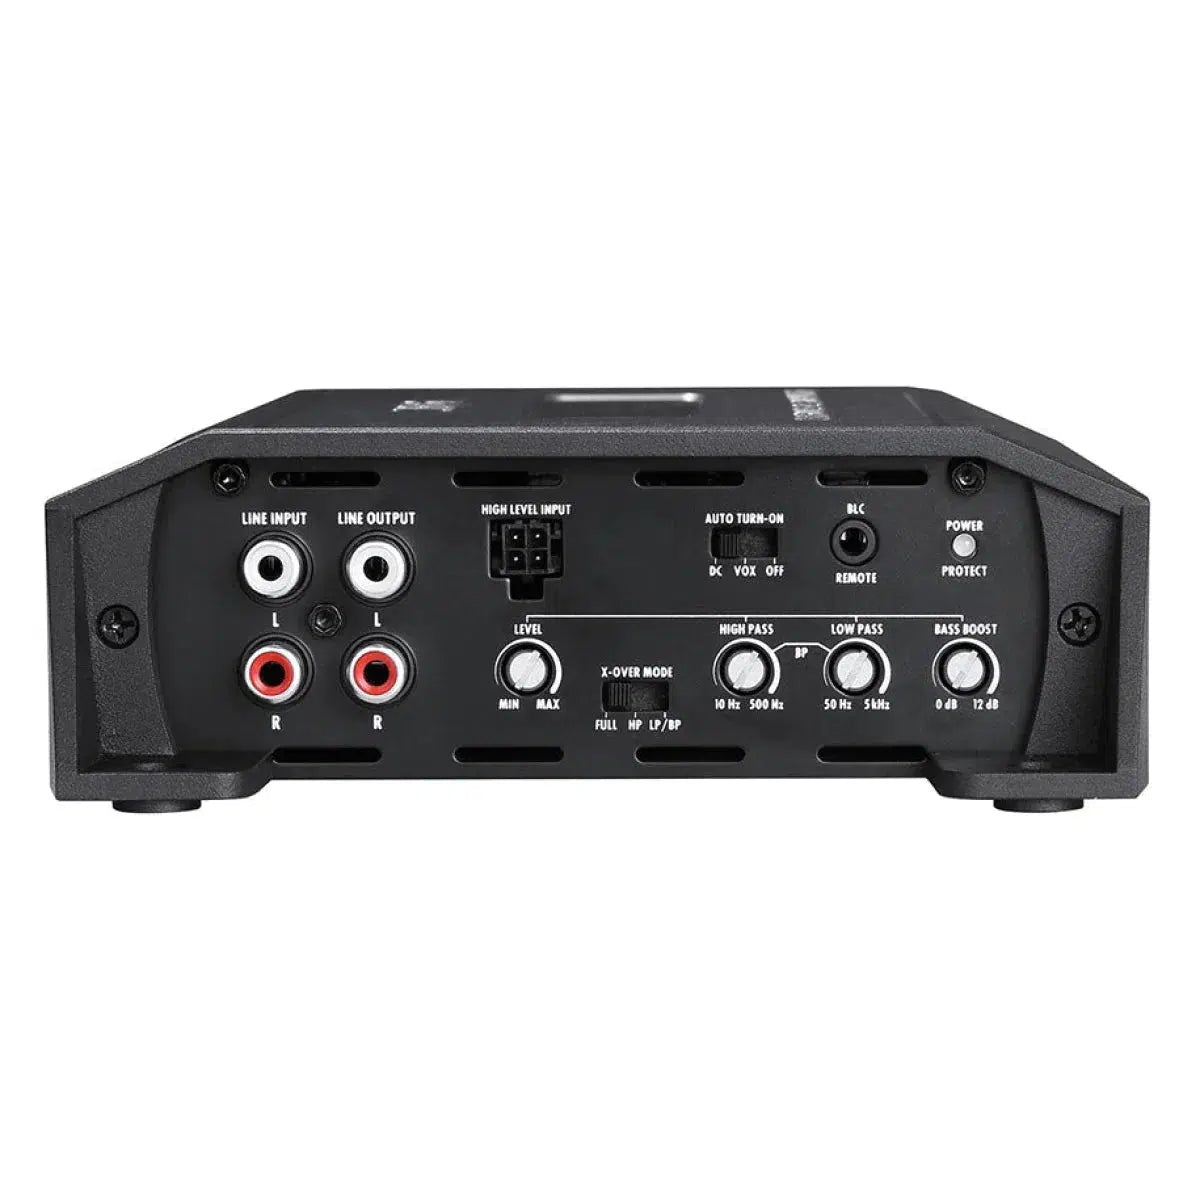 Amplificador de 2 canales Hifonics-Zeus ZXR600/2-Masori.de